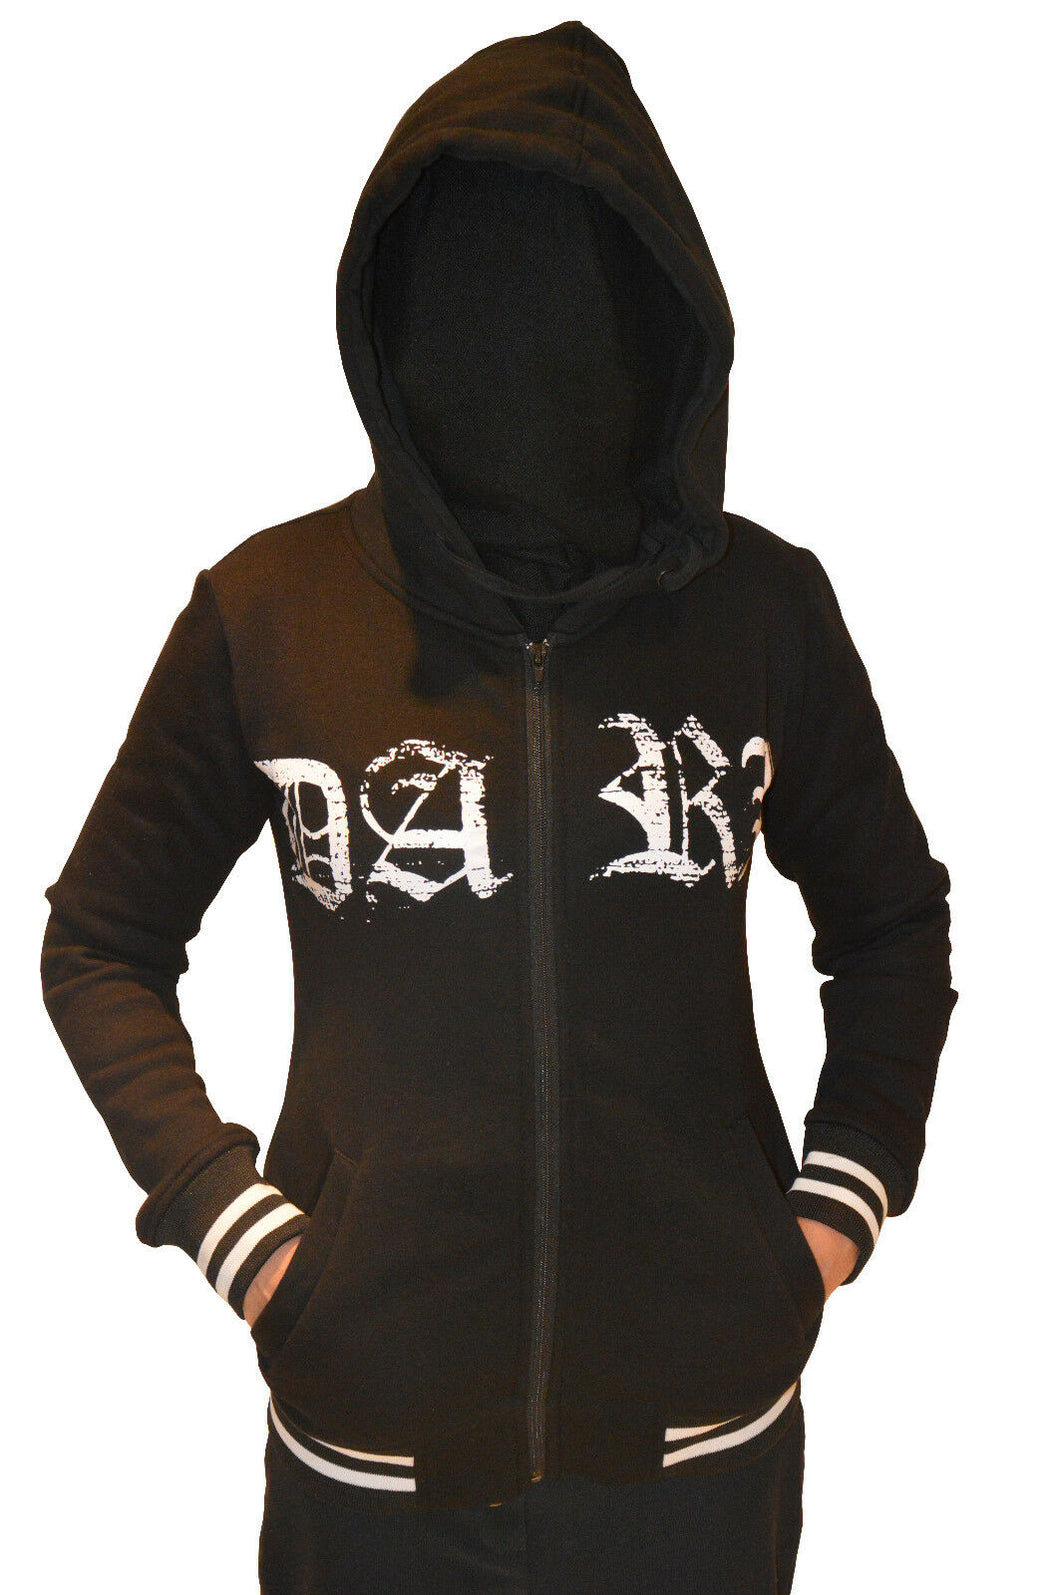 Damen Kapuzenjacke Hoodie PENTAGRAM Gothic Black Metal 666 mit Schriftzug DARK